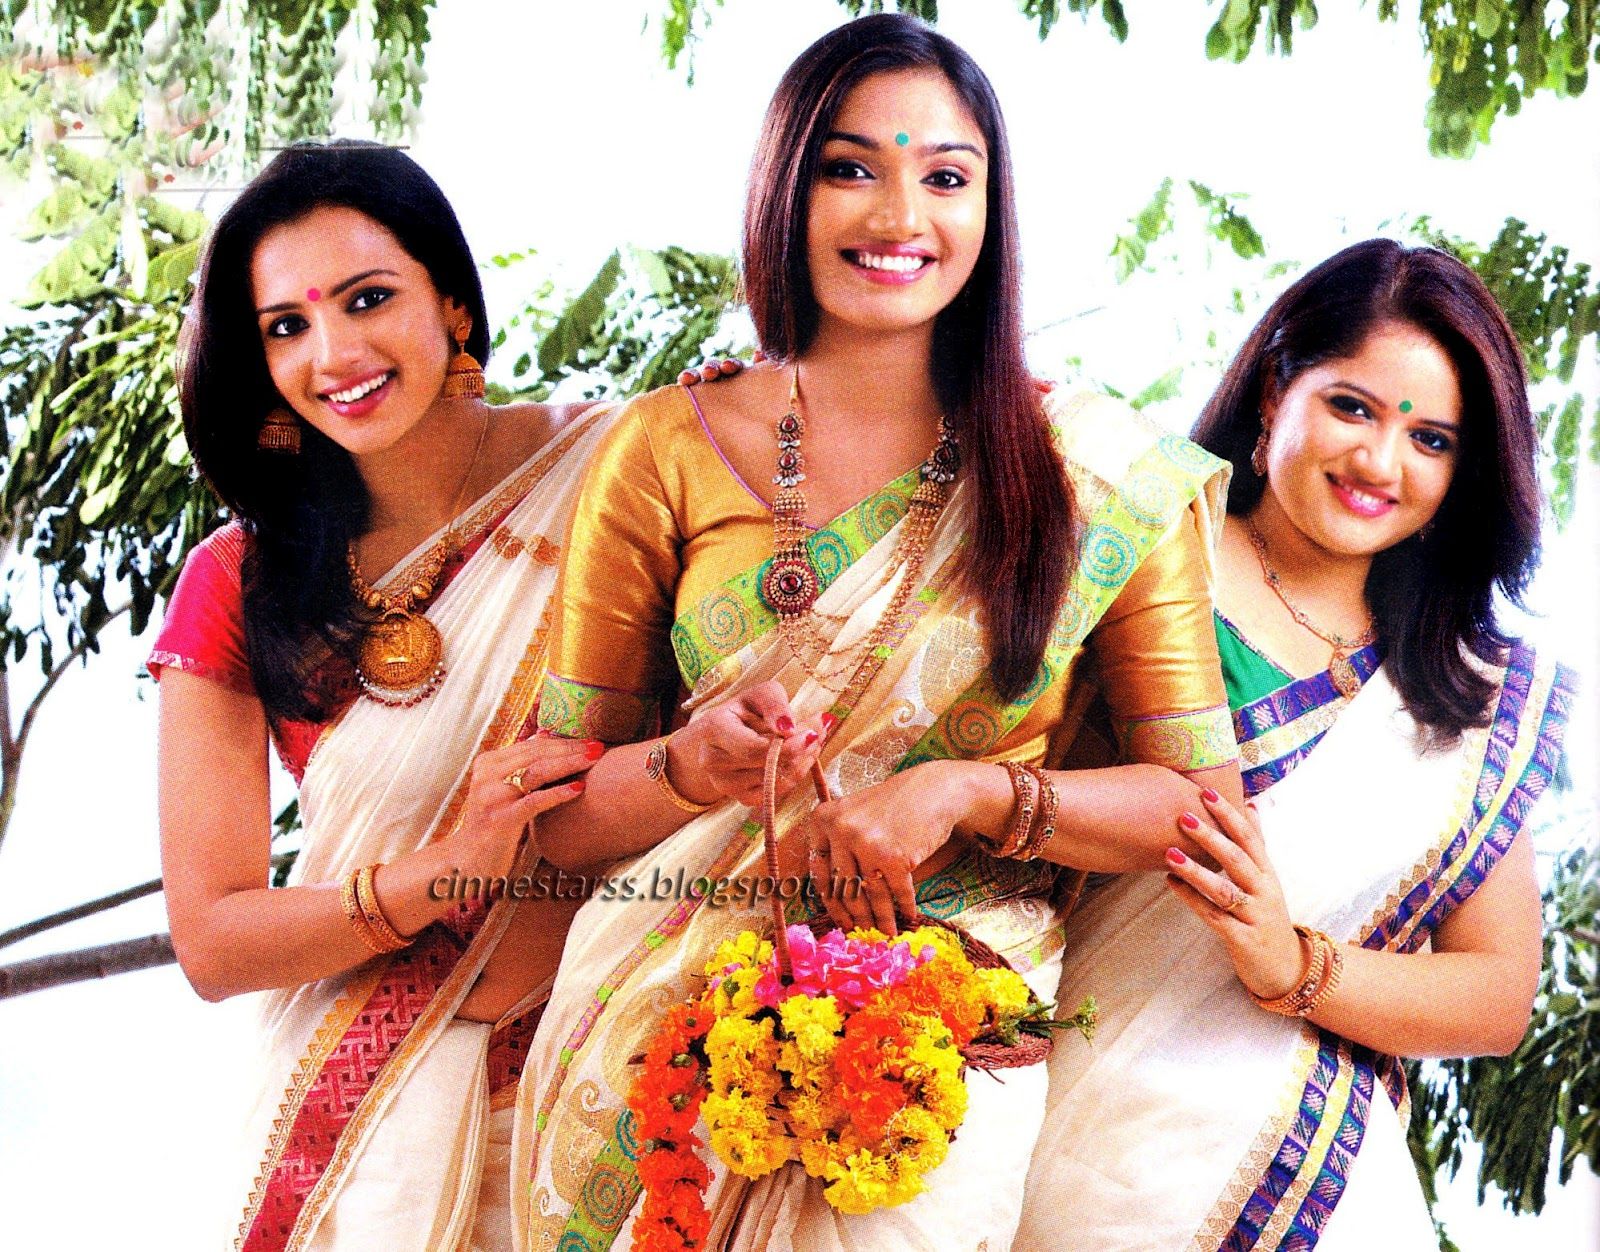 Cine Stars: Shruti, Aishwarya devan & Shafna